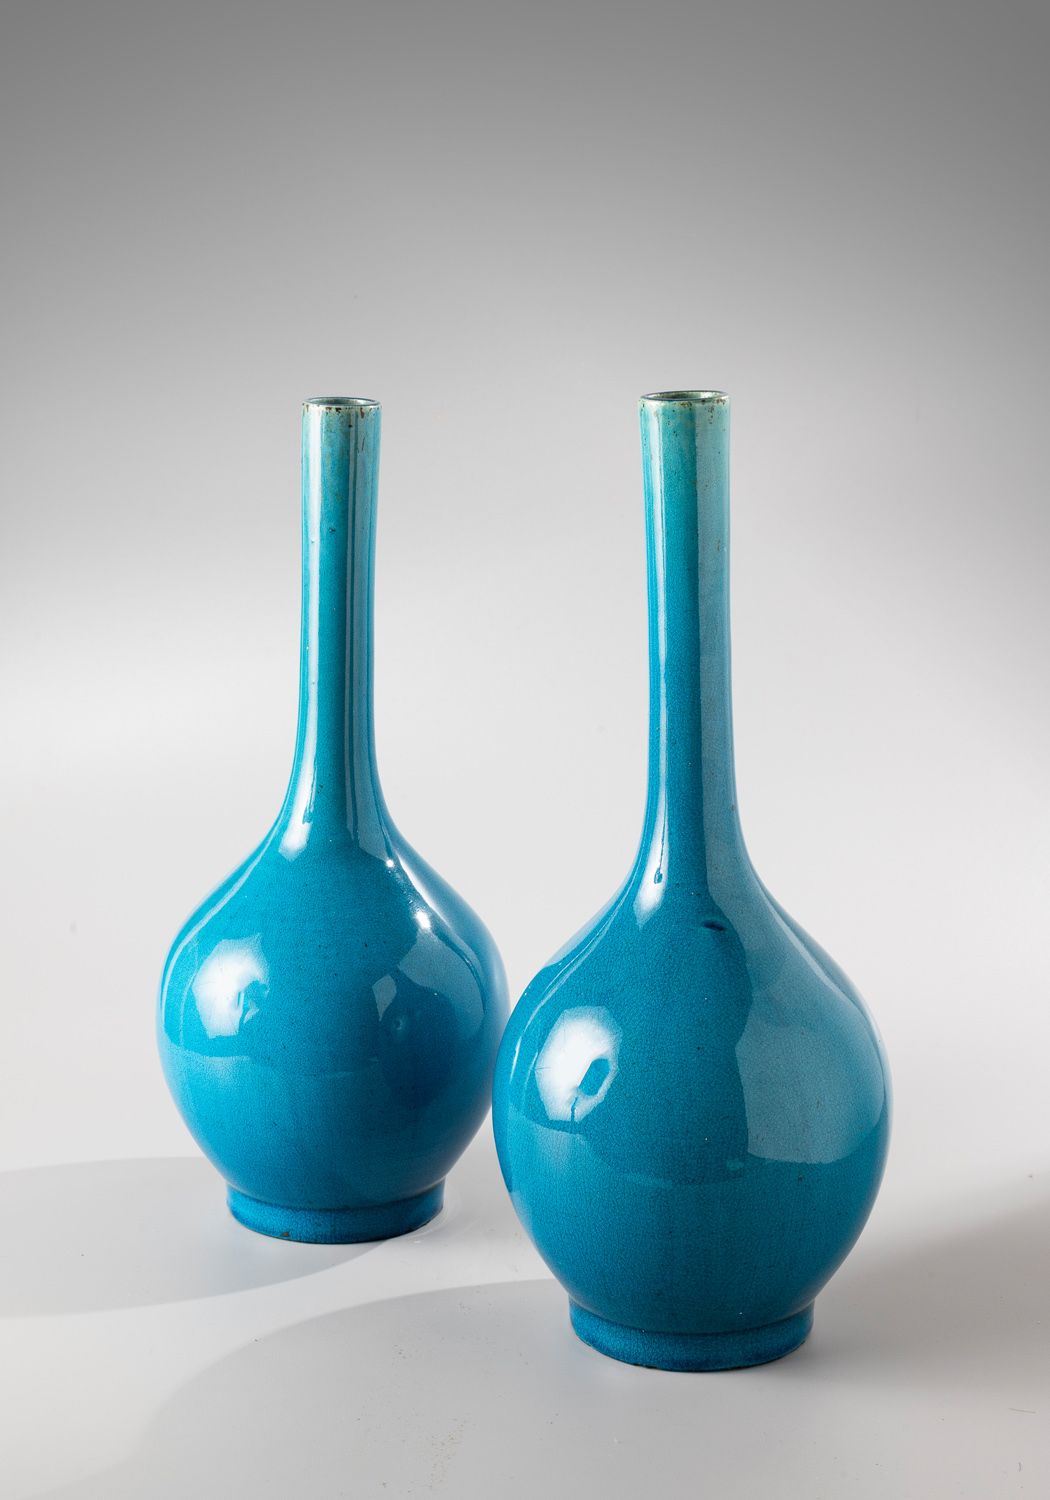 Null CHINA, 18th century

Turquoise blue glazed ceramic bottle vase with long ne&hellip;